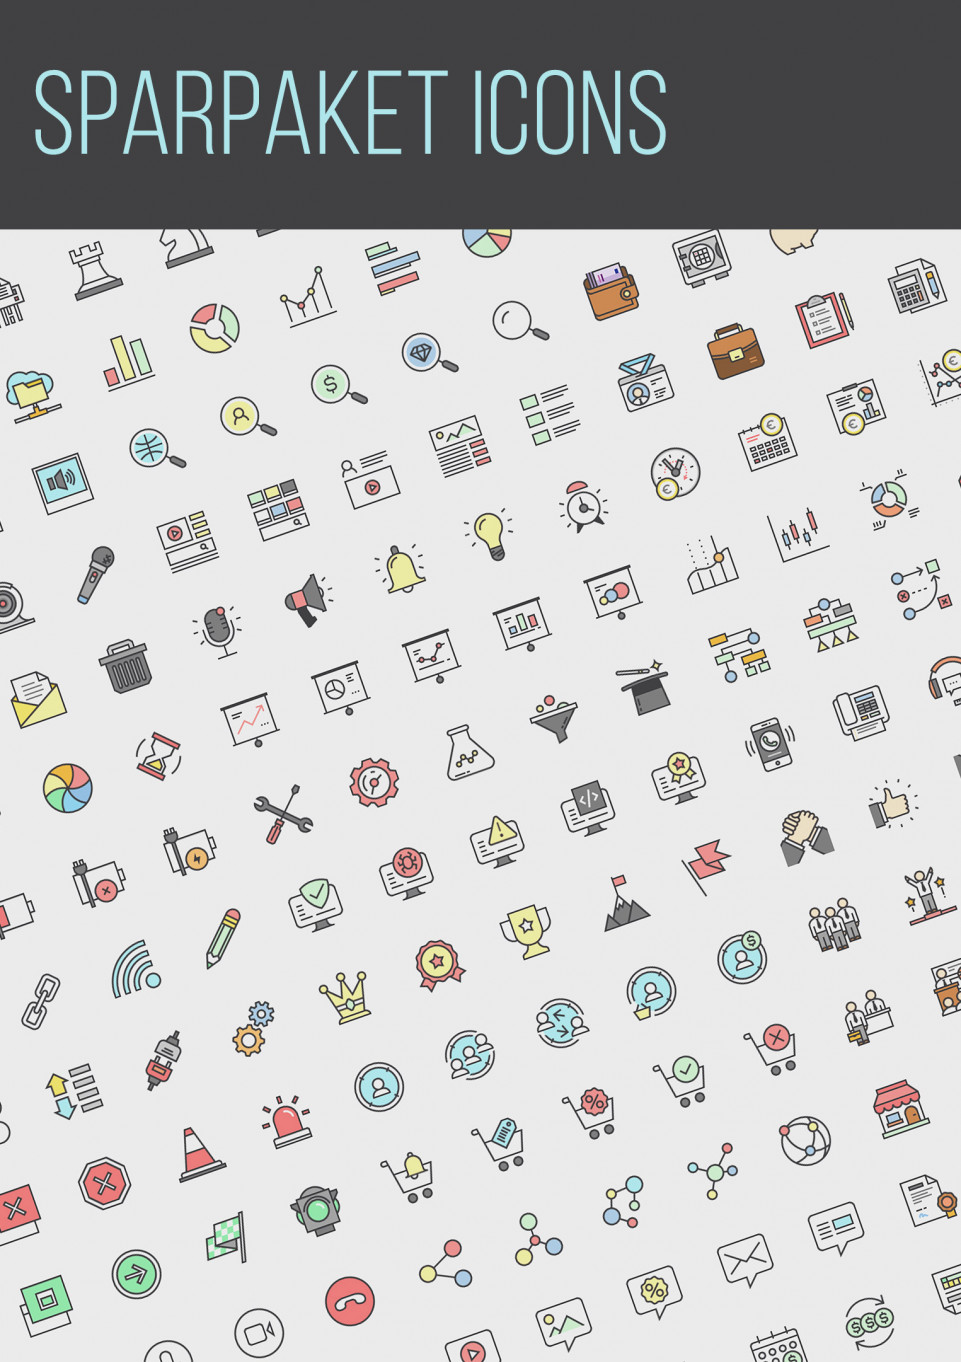 Das große Icon-Set: über 300 Grafiken zum Download (Sparpaket)